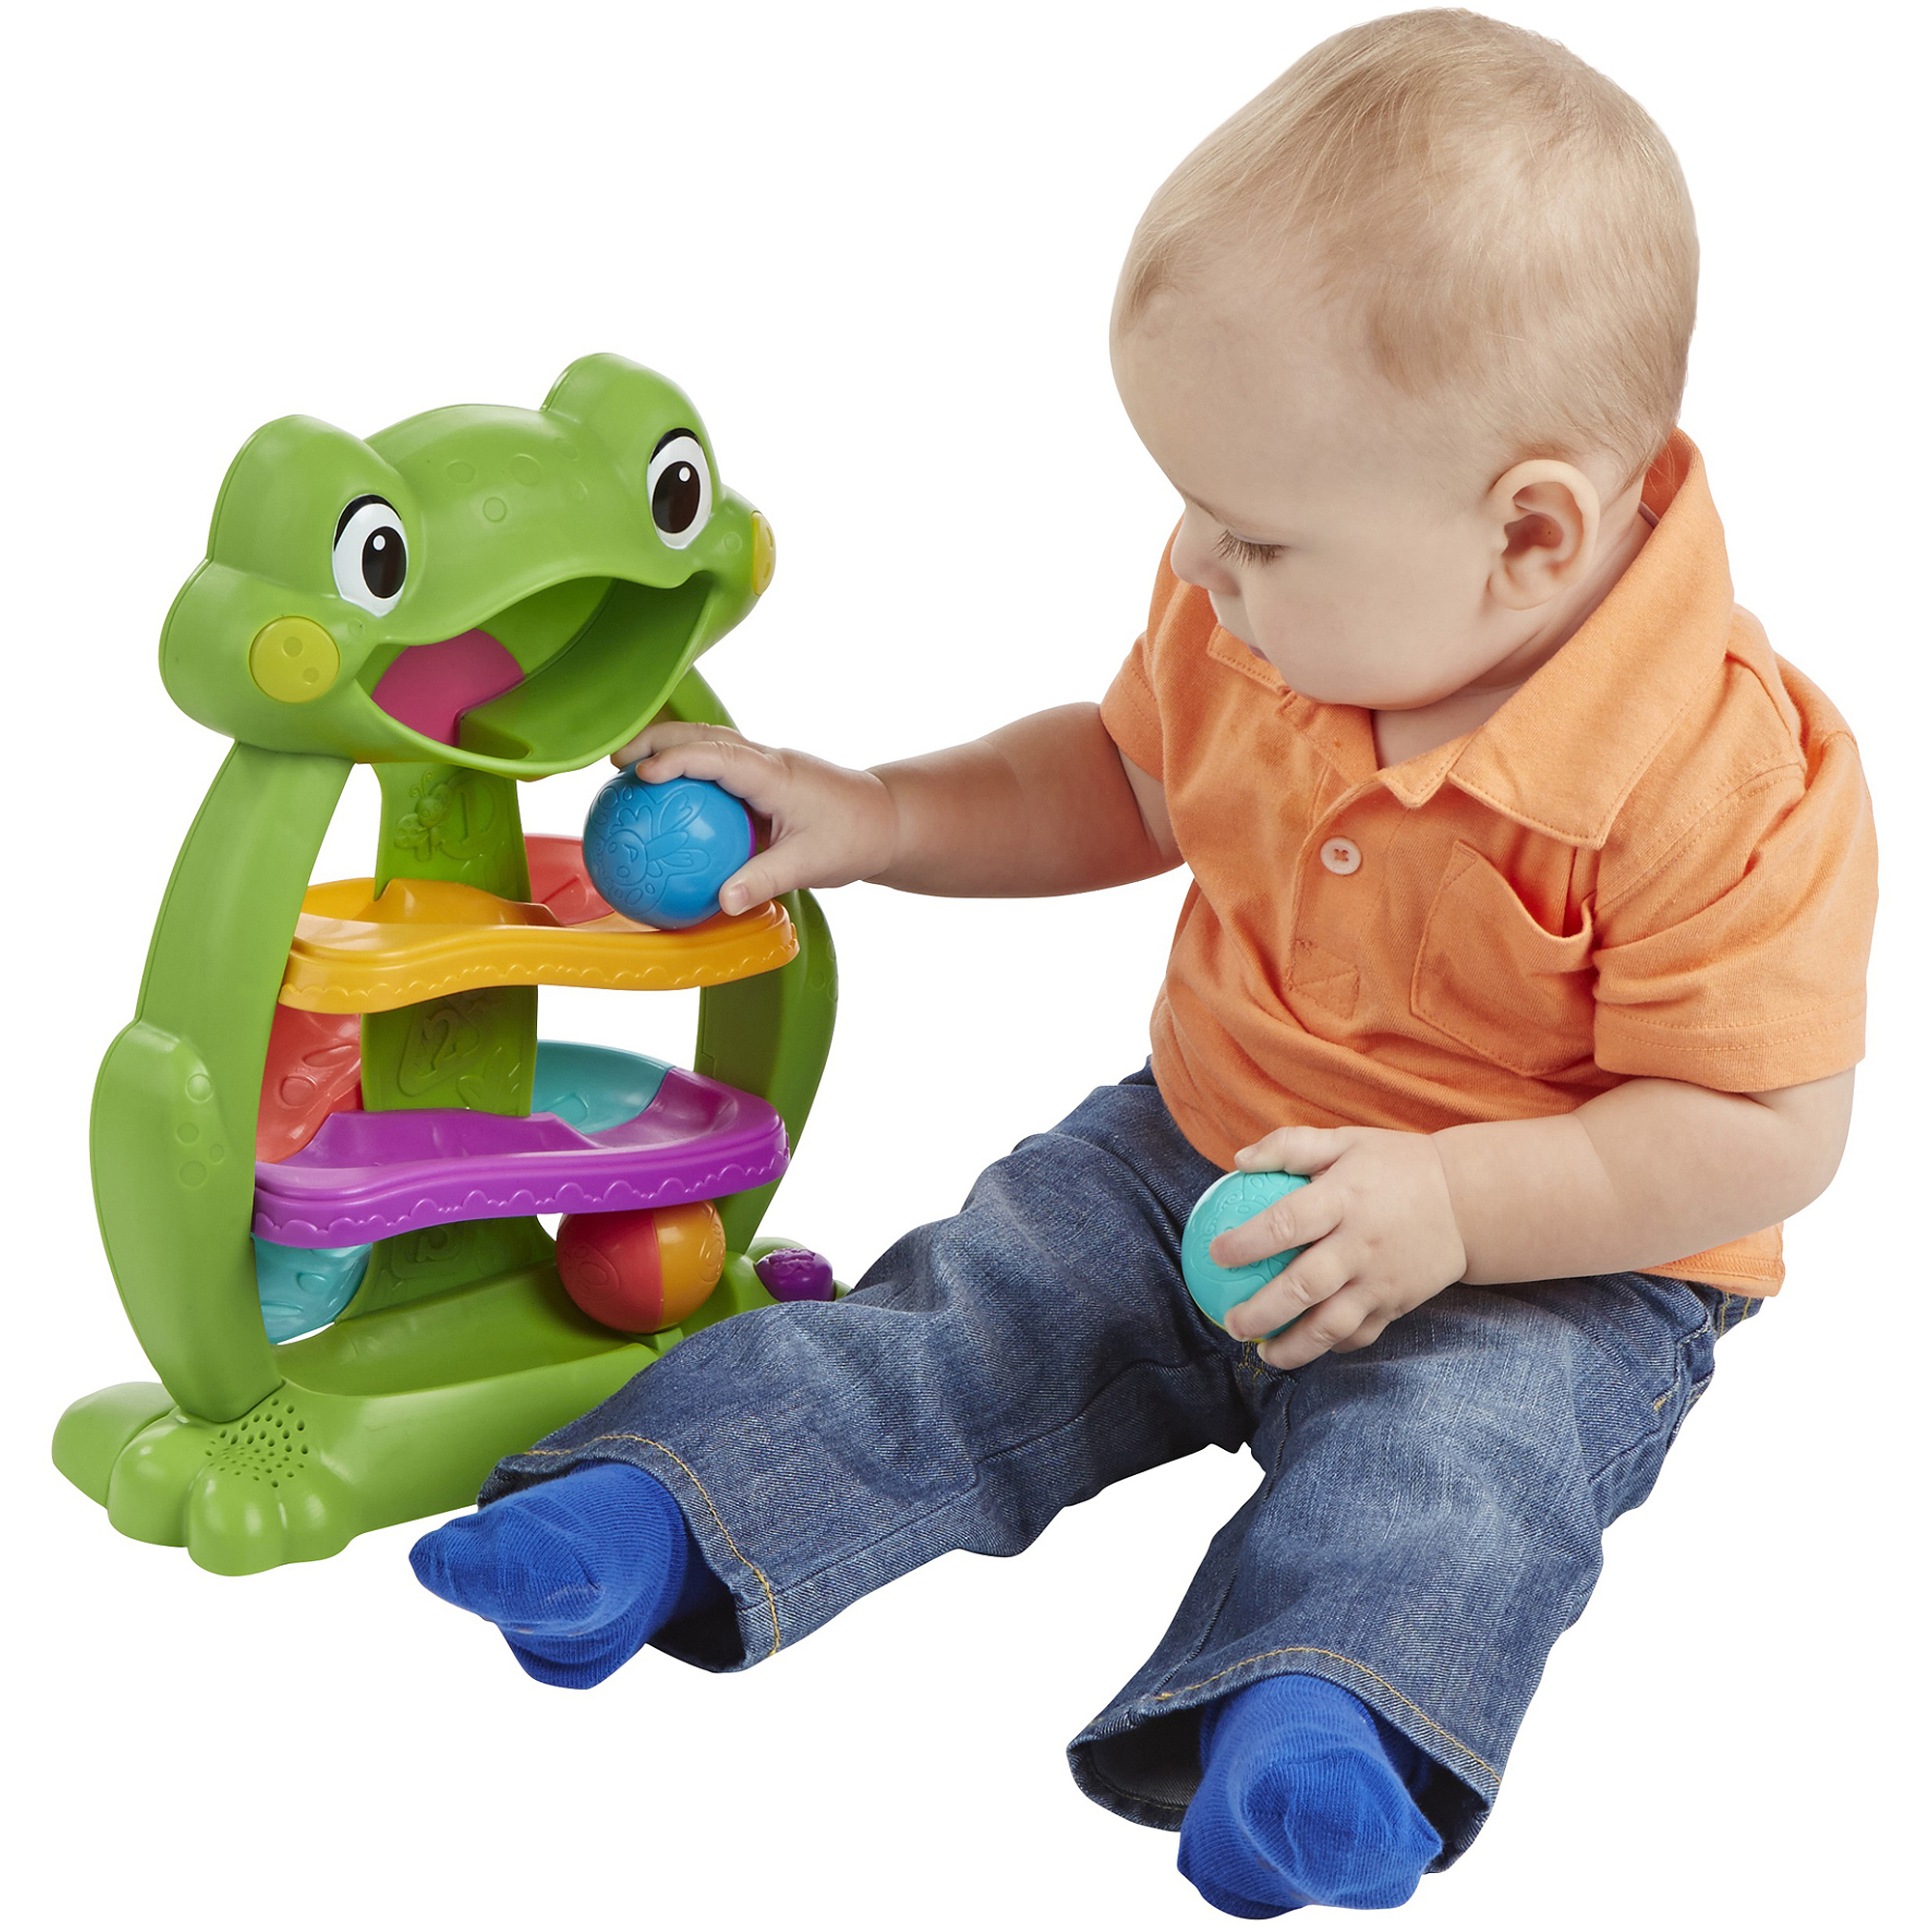 Playskool Tumble 'n Glow Froggio Toy - image 4 of 10